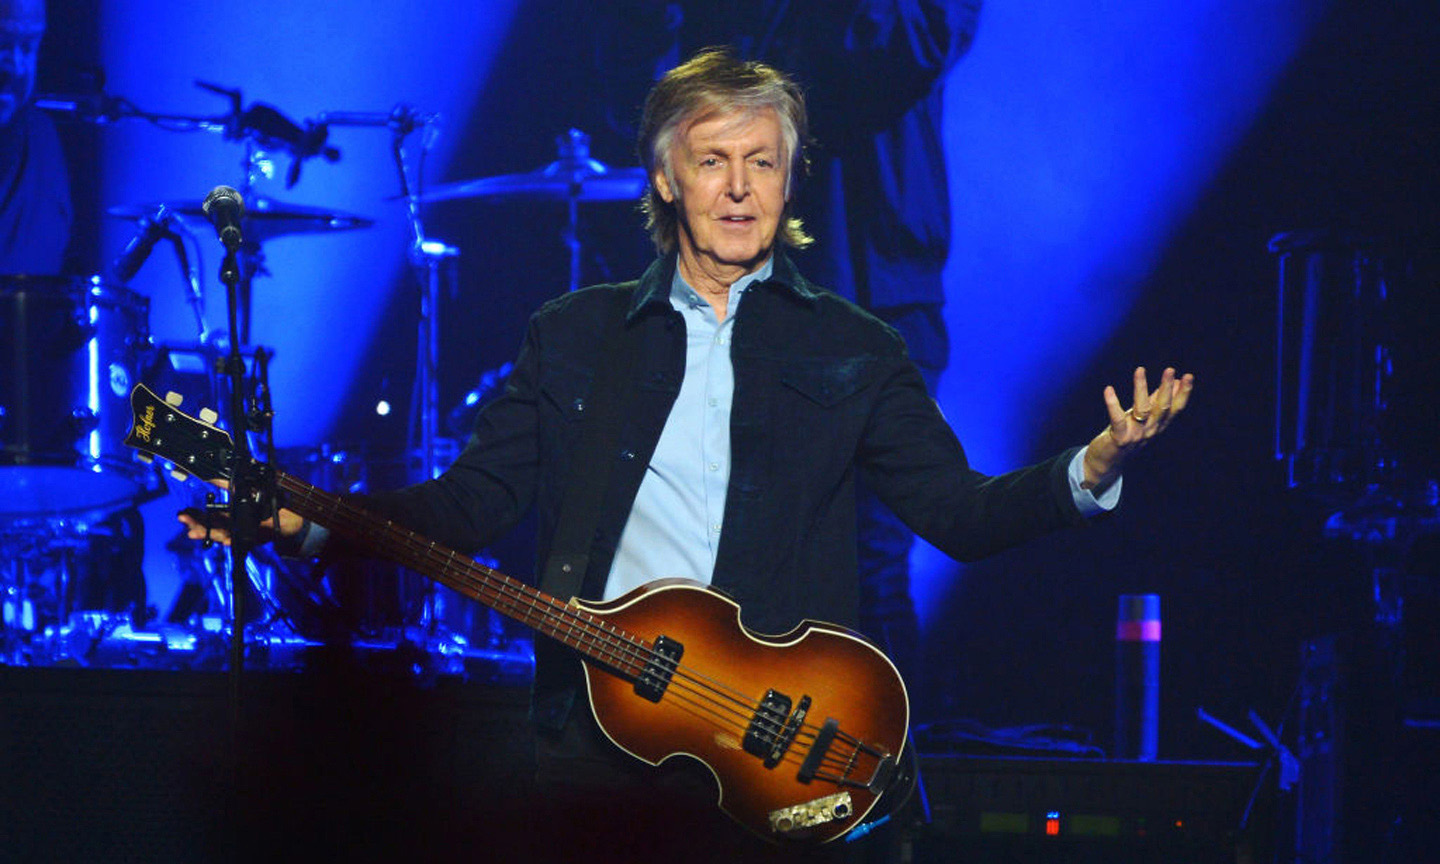 Paul McCartney ‘Duets’ With John Lennon At ‘Got Back’ Tour Opener